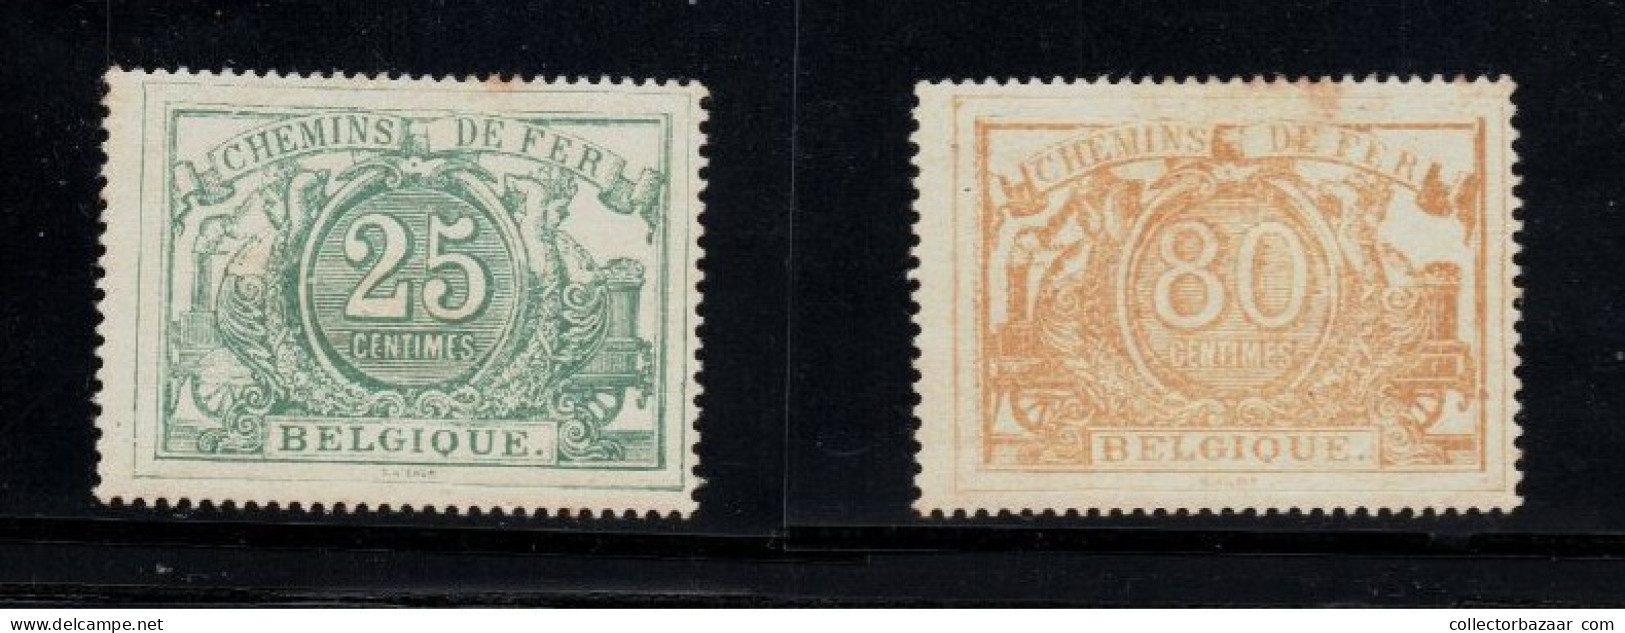 Belgium Belgique Mint Reprints Or Fakes ? Please Decide You Railway Railroad Stamps Chemins De Fer - Nuevos